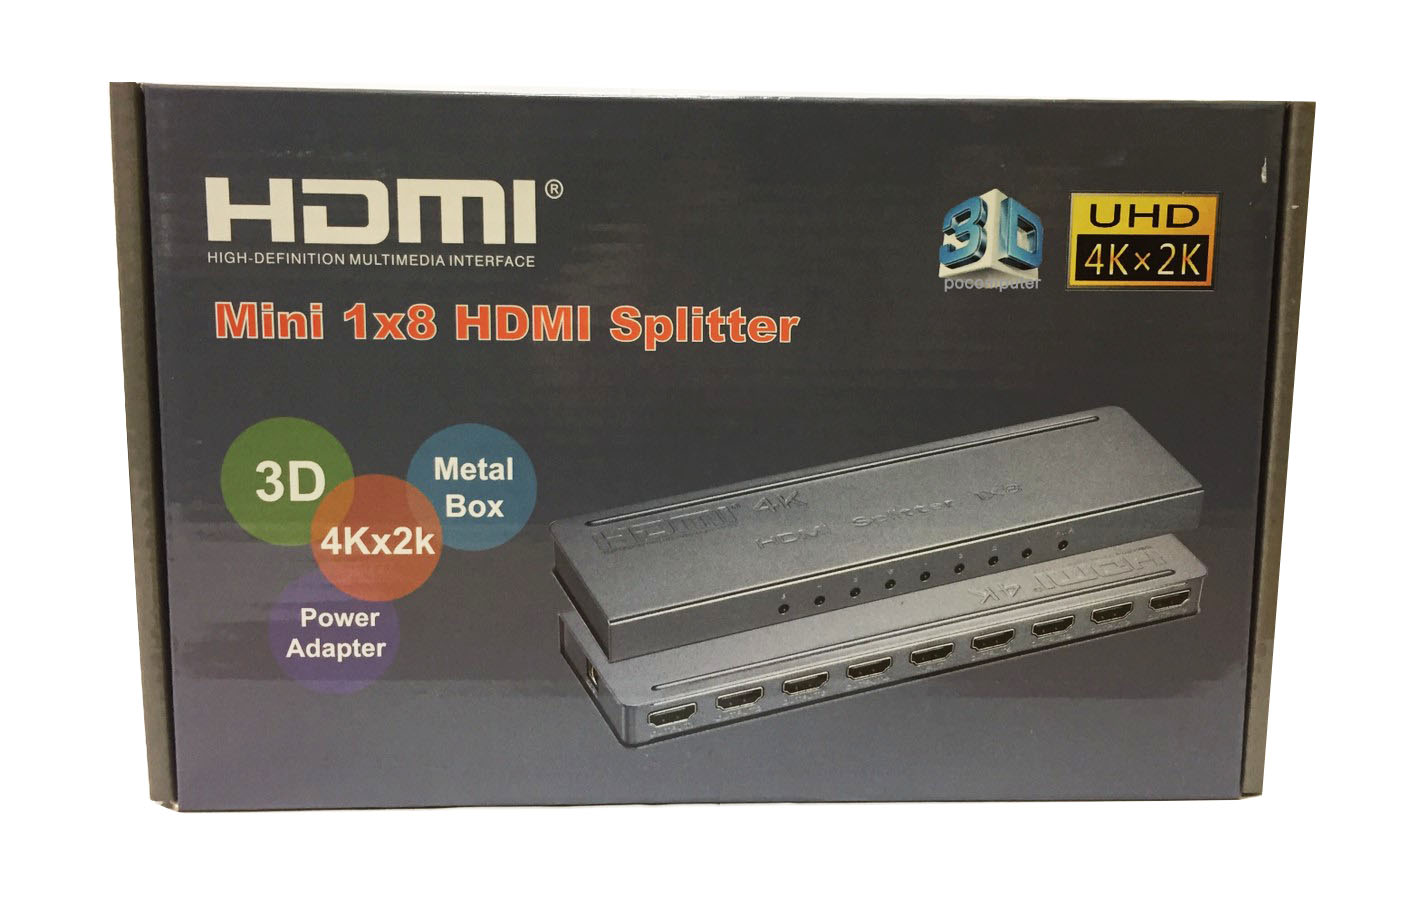 Mini 1x8 HDMI splitter